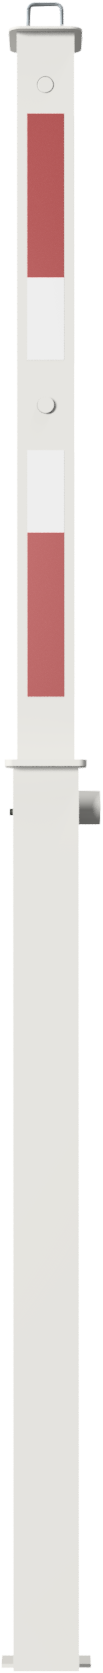 Modellbeispiel: Absperrpfosten -Bollard- 70 x 70mm -vollversenkbar- (Art. 470dl)